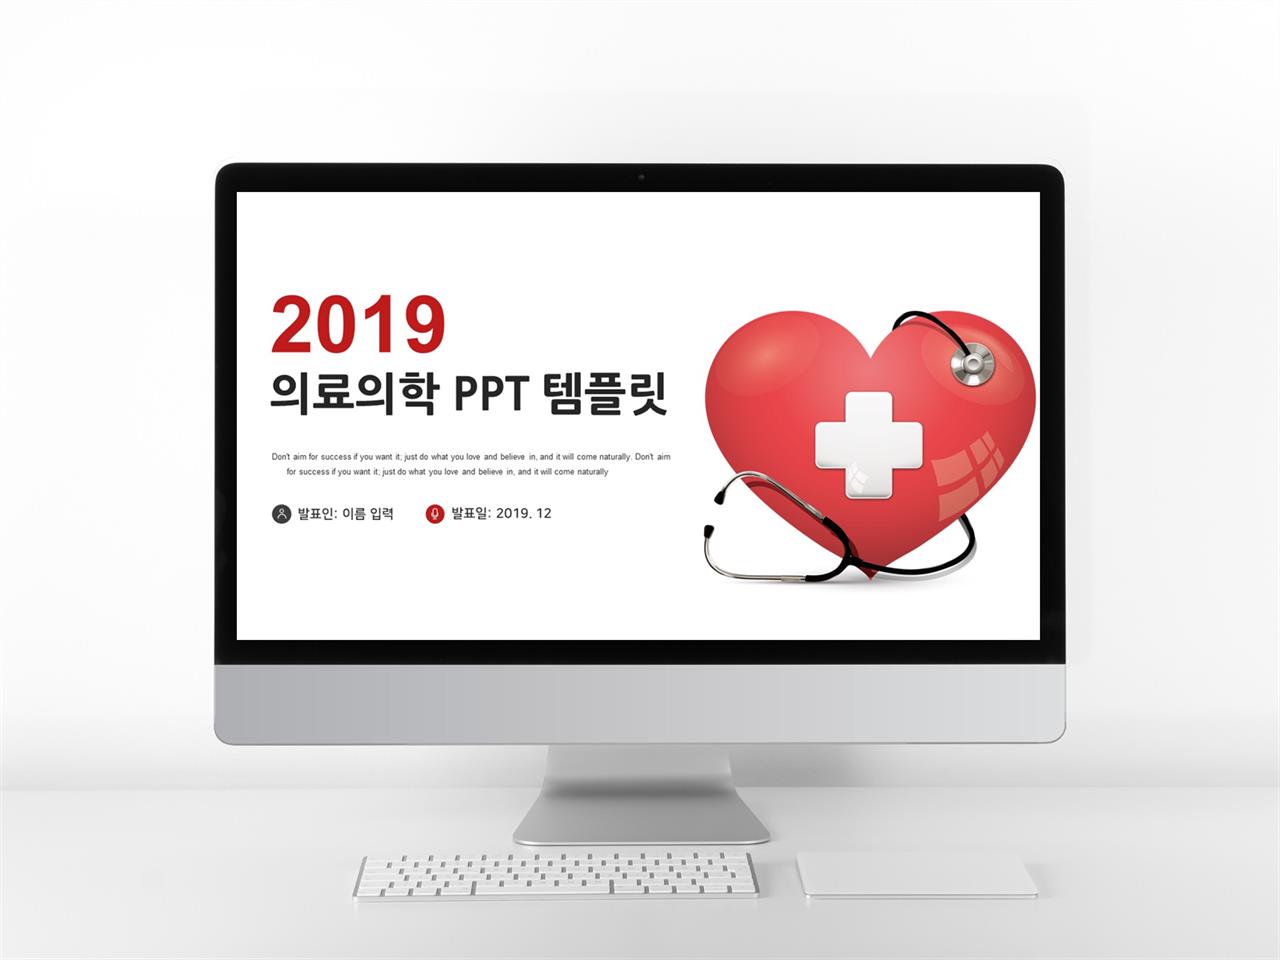 병원마케팅 빨간색 알뜰한 고급스럽운 PPT서식 사이트 미리보기